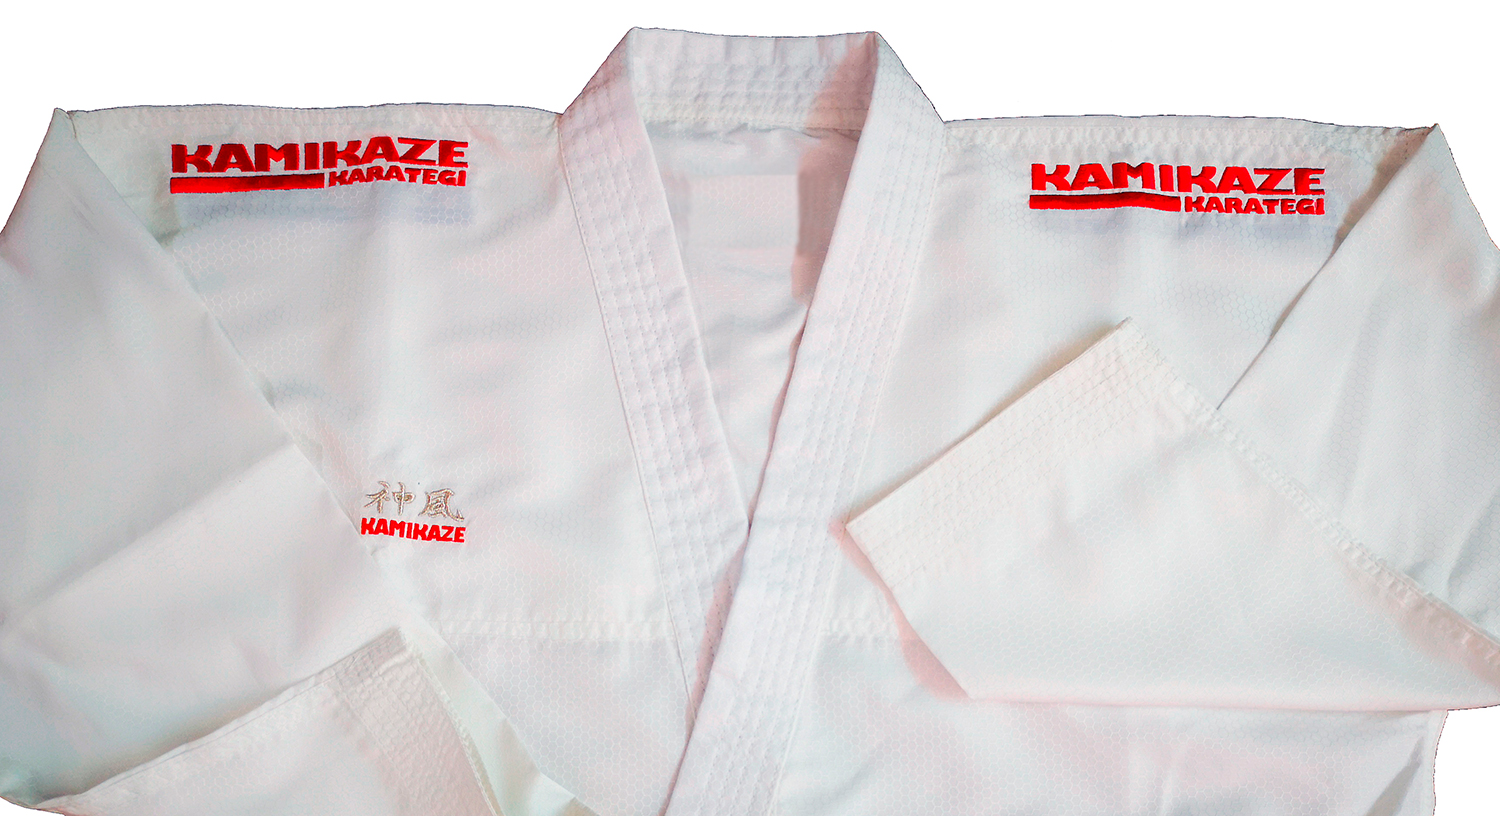 Kamikaze Karate-Gi Markenzeichen Schulterbestickung in ROT auf beiden Schultern